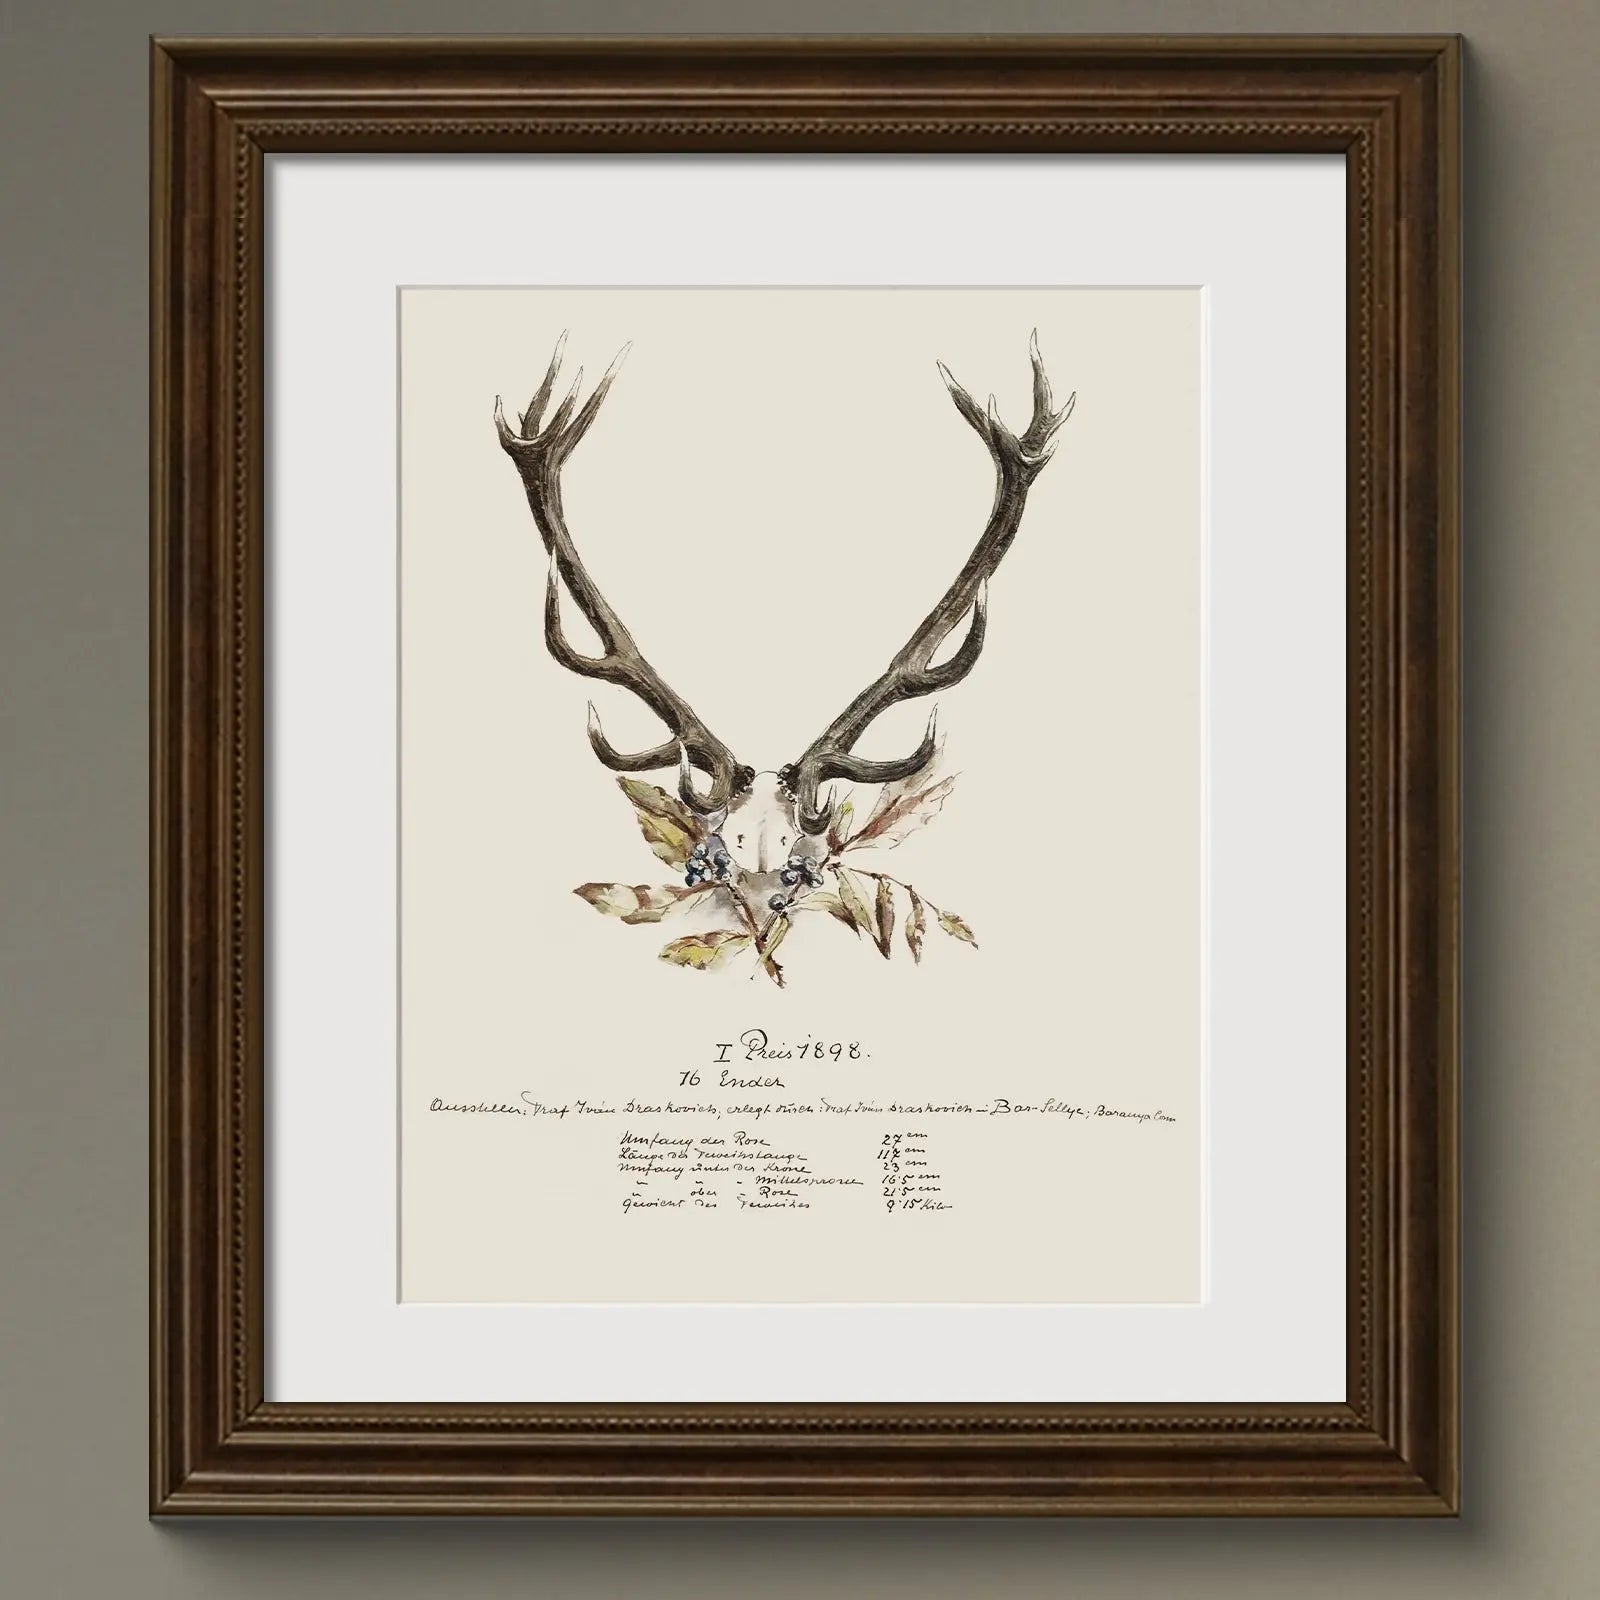 Vintage Naturalist Illustrations: 19th c. Trophy Antlers - Emblem Atelier